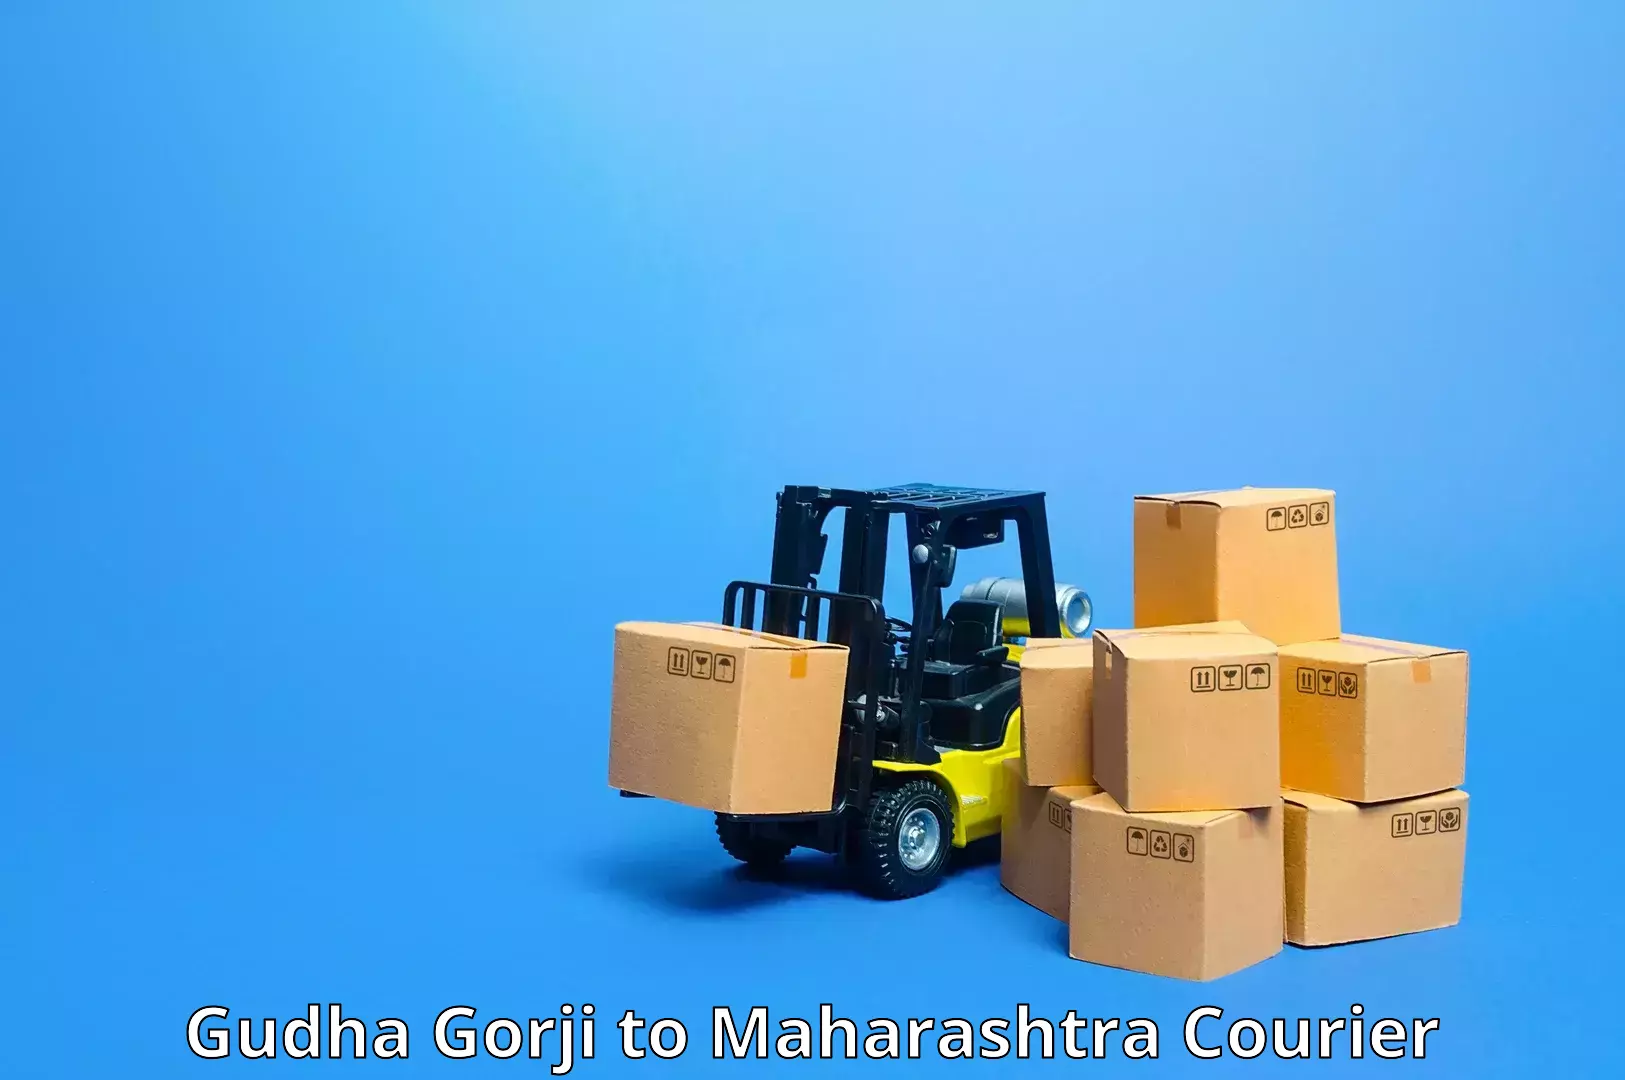 Nationwide parcel services Gudha Gorji to Koregaon